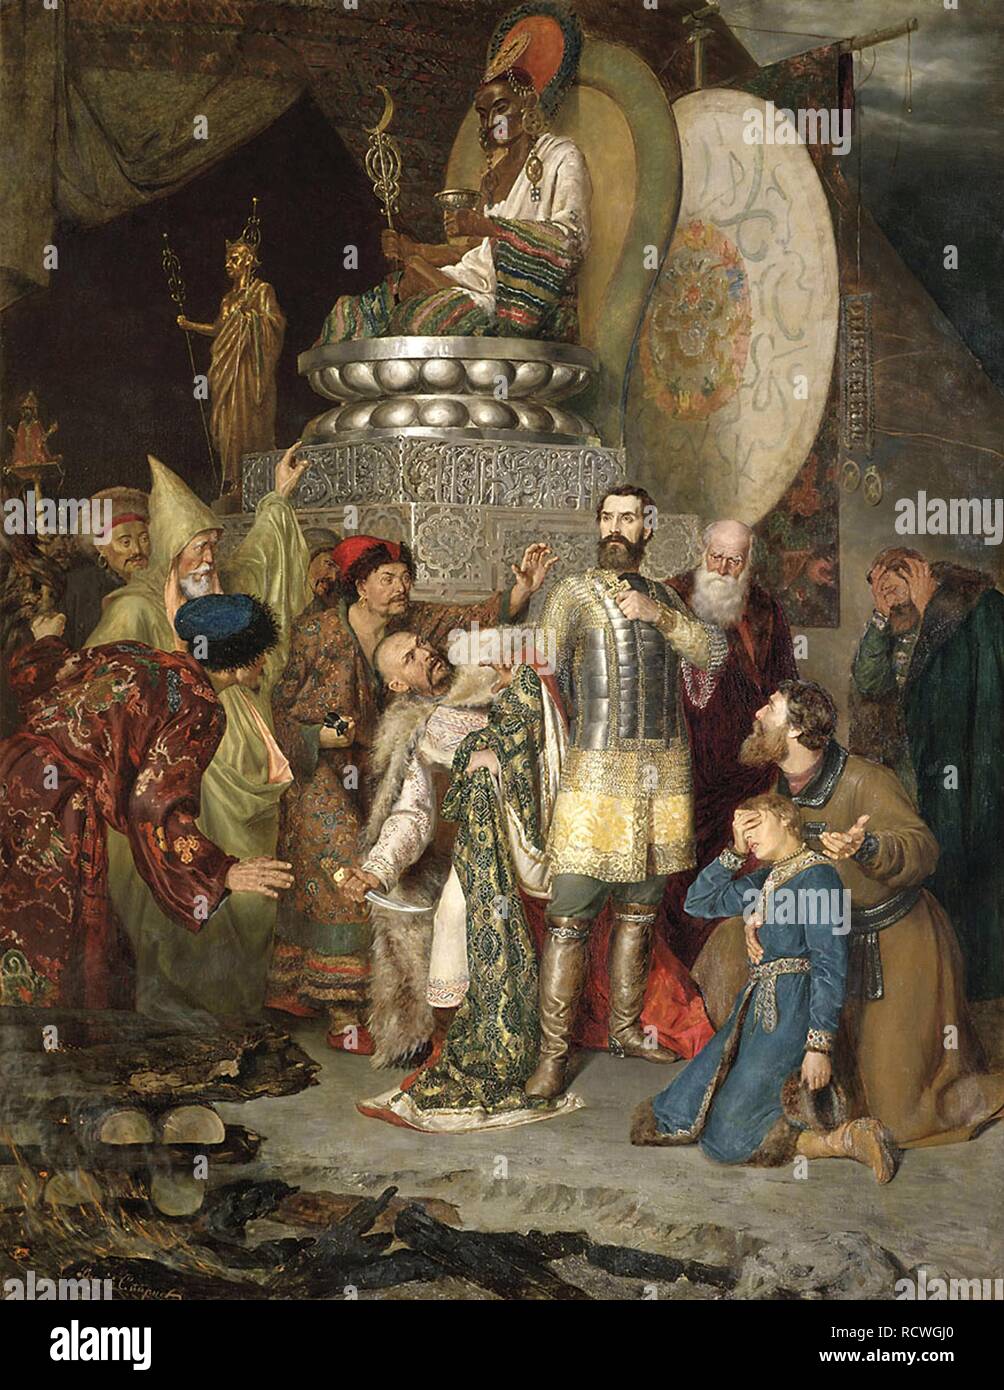 Il principe Michael di Chernigov al camp di Batu Khan. Museo: Membro Galleria Tretyakov di Mosca. Autore: Smirnov, Vassili Sergeevich. Foto Stock